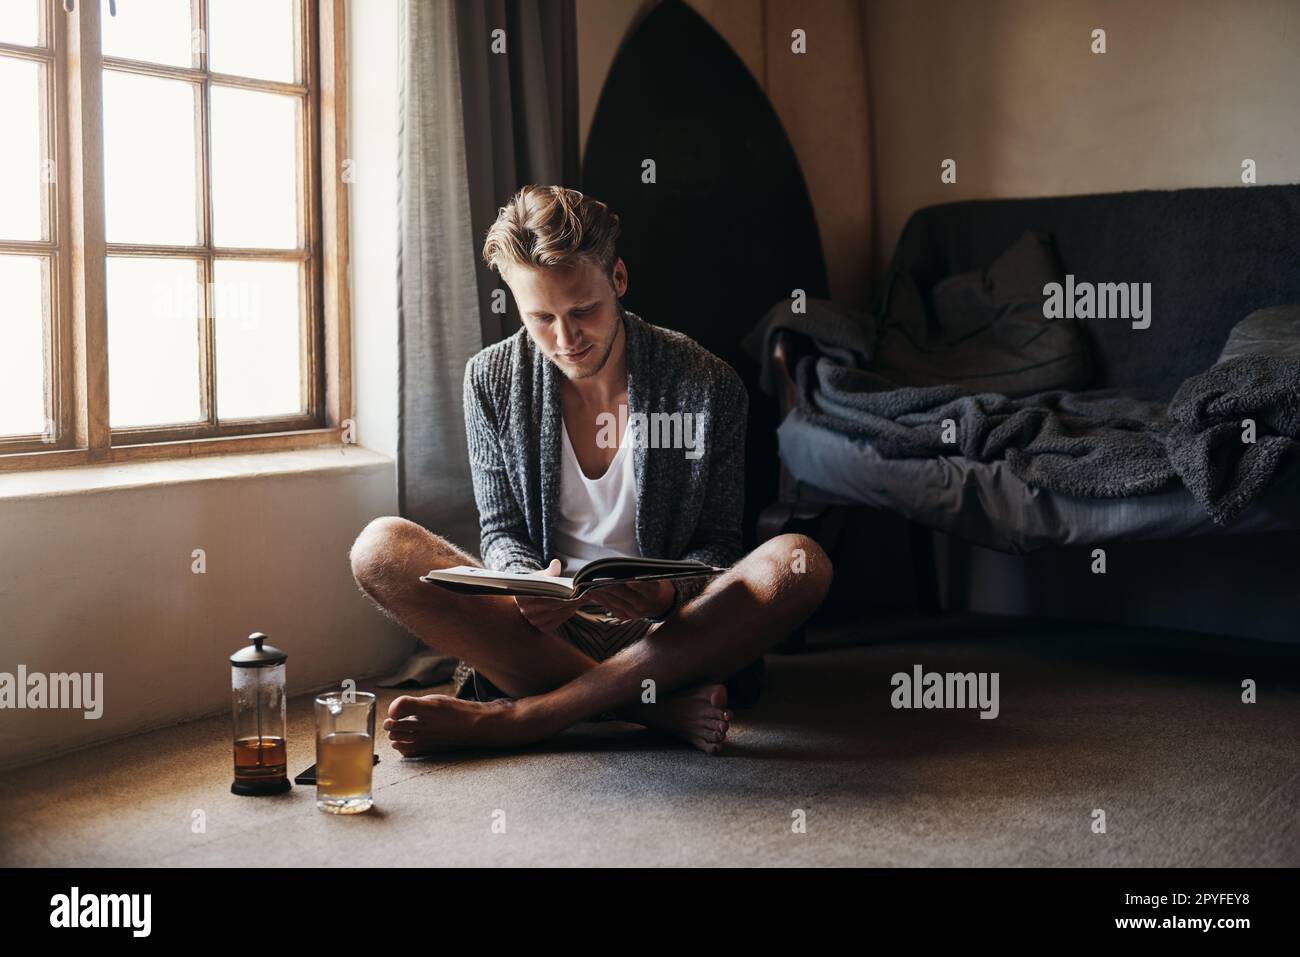 Es gibt nichts entspannenderes als eine gute Lektüre. Ein junger Mann liest ein Buch, während er zu Hause auf dem Boden sitzt. Stockfoto